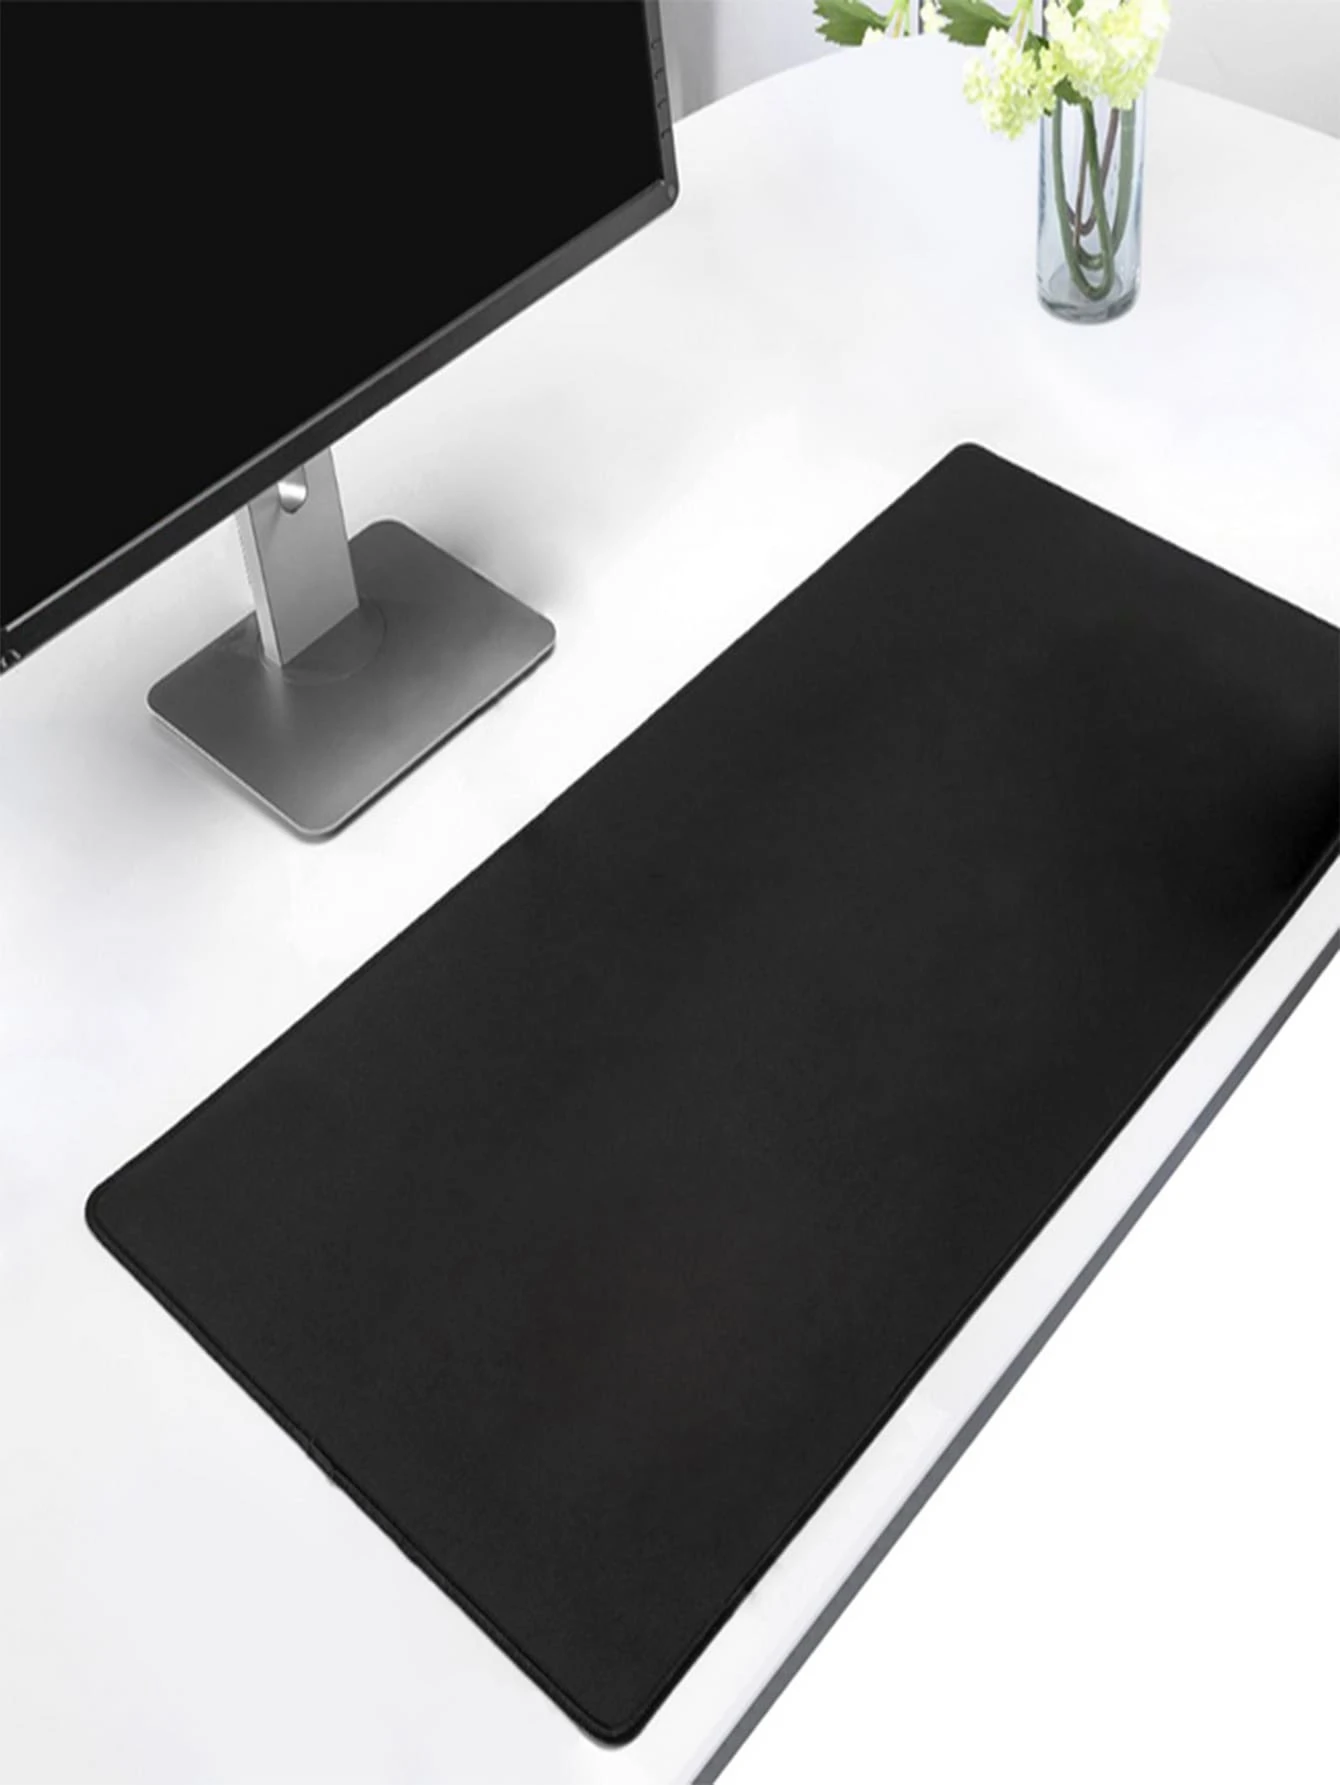 Μονόχρωμο επιτραπέζιο mouse pad